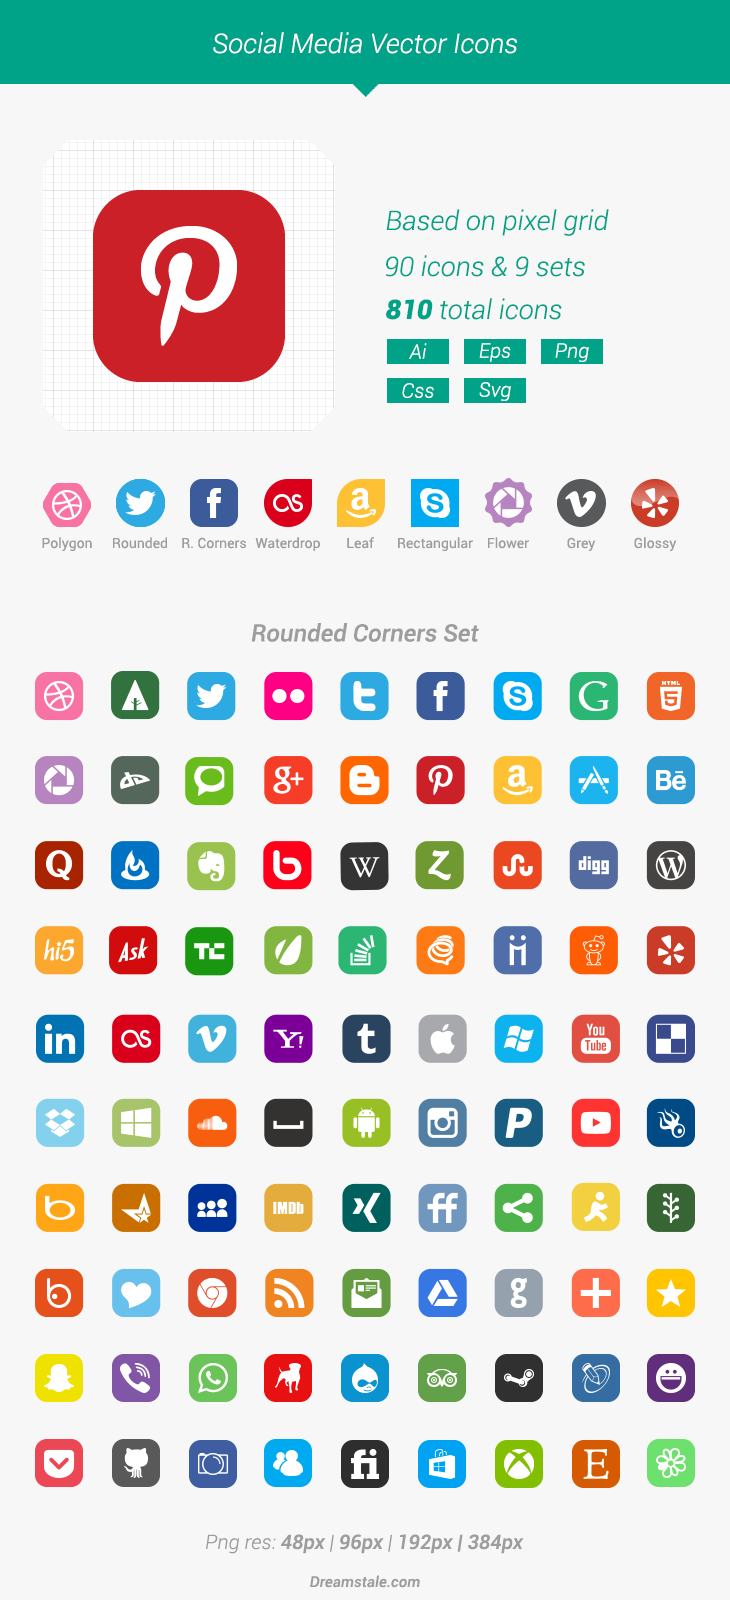 Free Download: 90 Vector Social Media Icons - Dreamstale